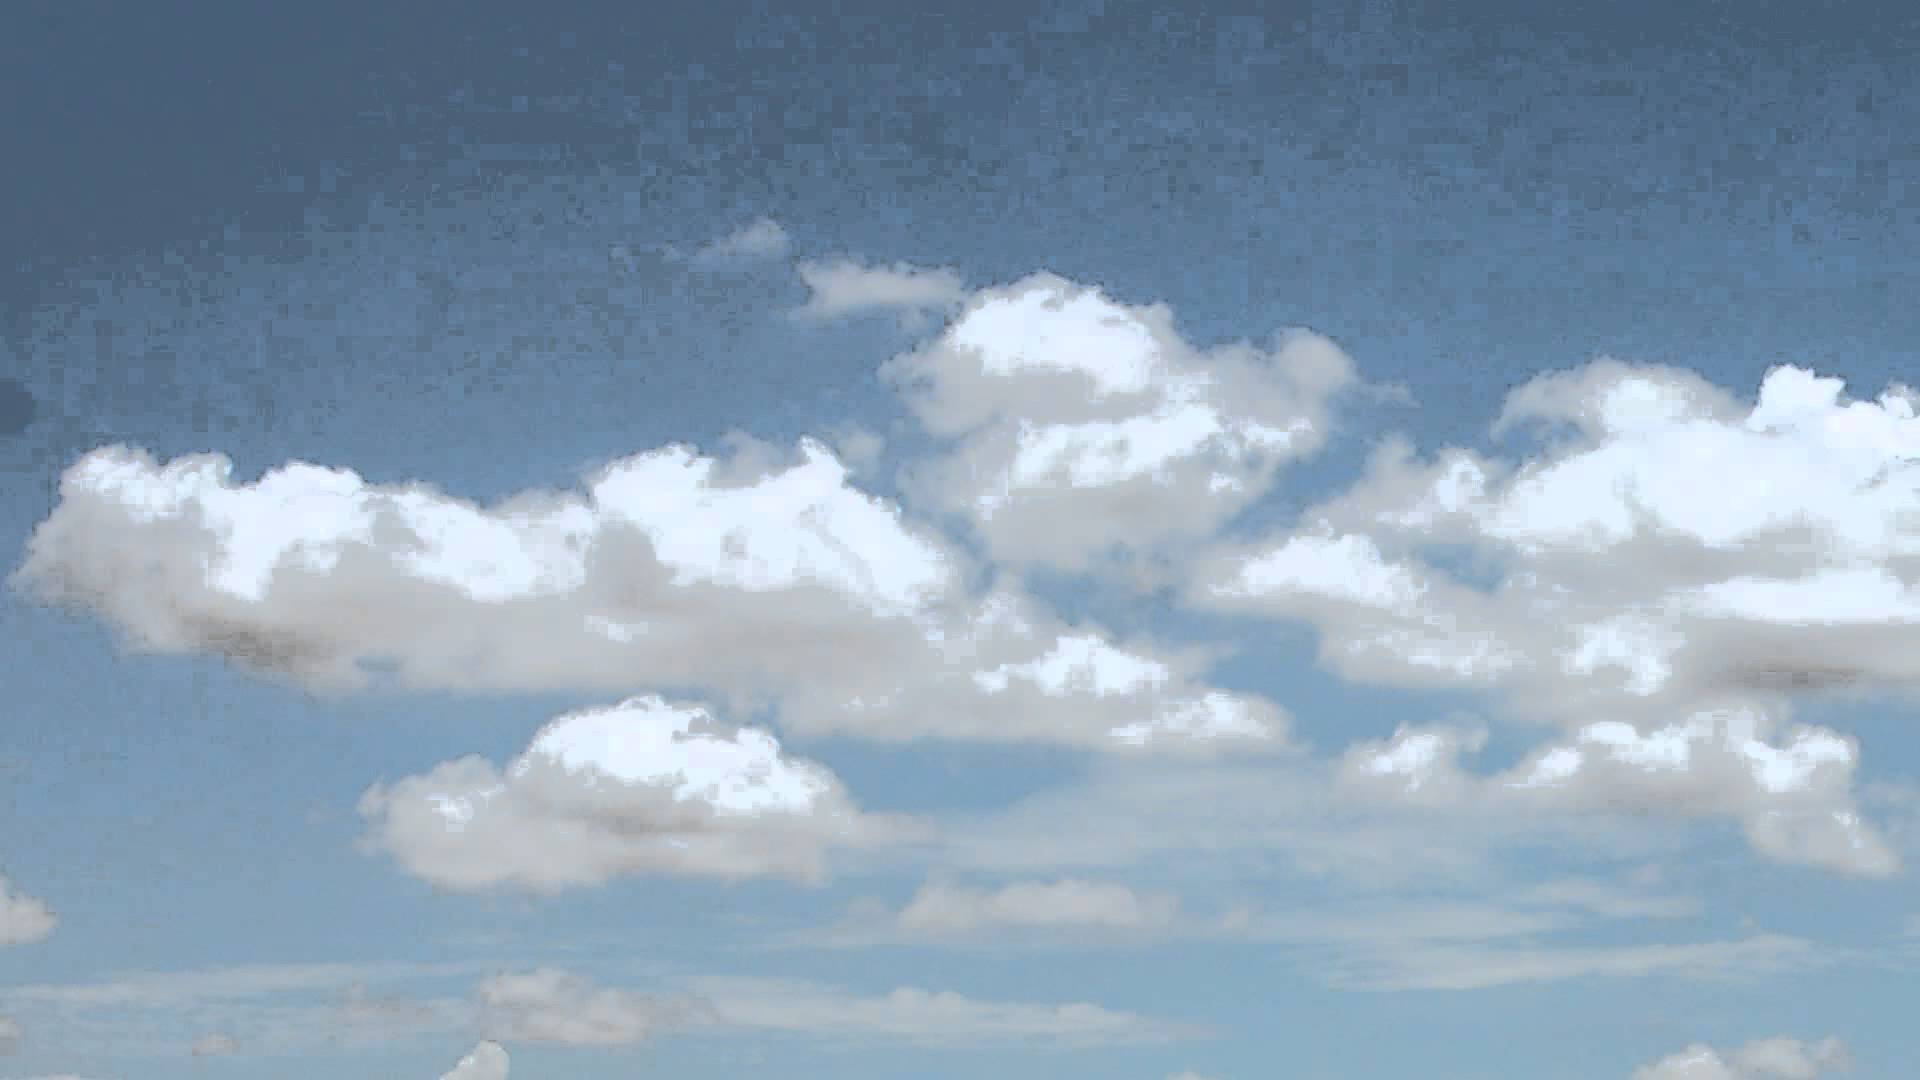 Bầu trời xanh thật sự đẹp khi có những đám mây bay ngang qua. Hãy xem hình nền màn hình xanh này với những hình ảnh động vật nhỏ nhắn bay lượn, sẽ khiến bạn cảm thấy yên bình và thư giãn lúc làm việc.